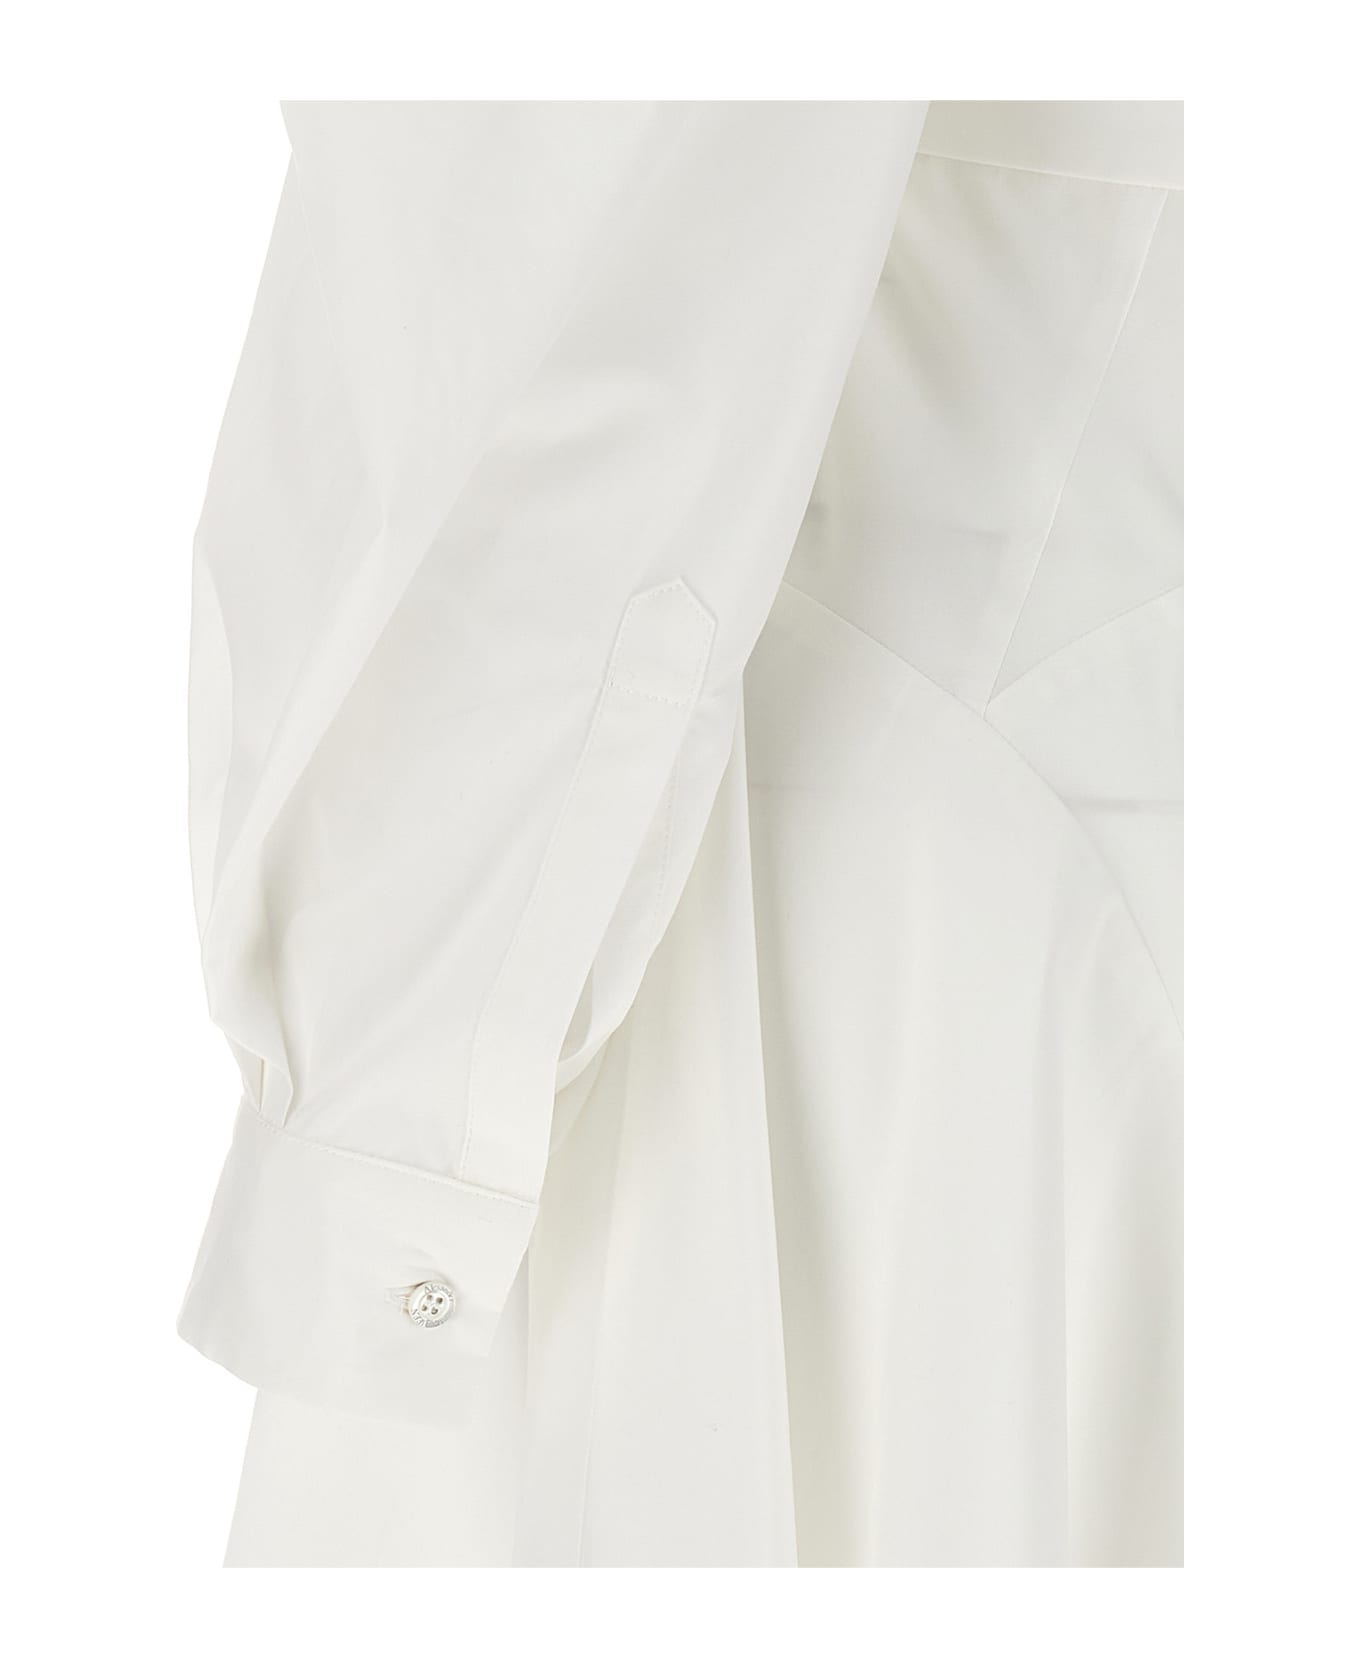 Alexander McQueen Chemisier Dress - White